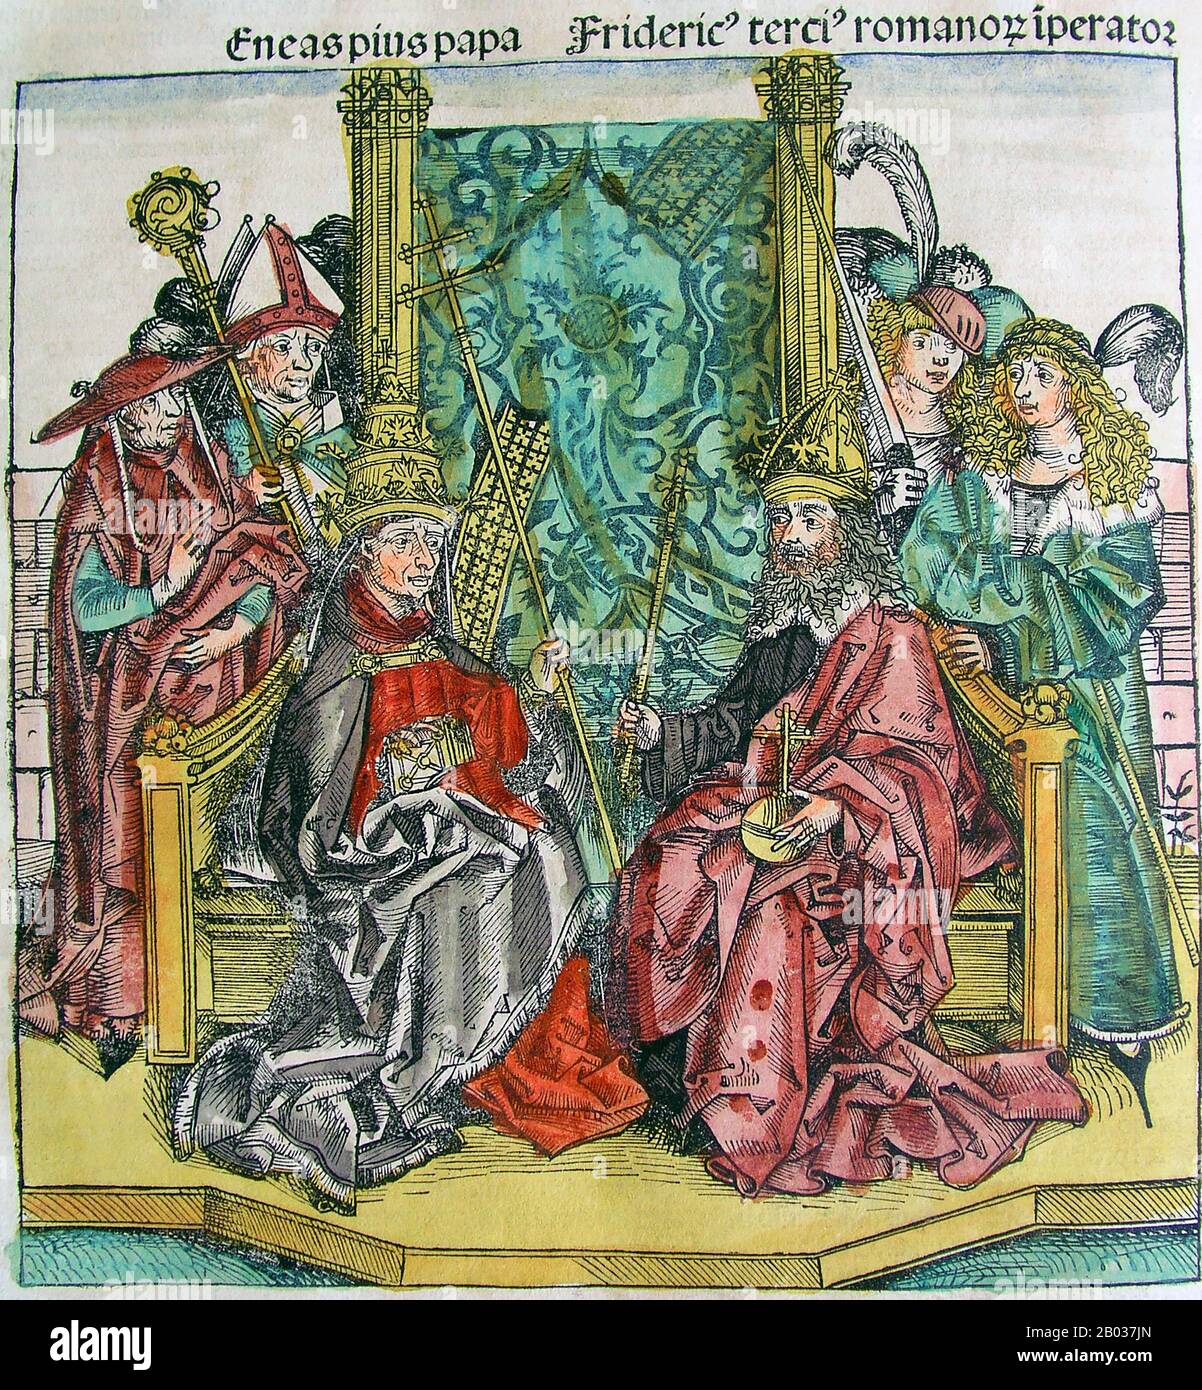 Frederick III (1415-1493), aussi connu sous le nom de Frederick The Fat et Frederick The Paisible, était le fils aîné du duc autrichien intérieur Ernest The Iron, membre de la dynastie des Habsbourg. Il est devenu duke de l'Autriche intérieure en 1424 à l'âge de neuf ans, mais ne lui sera pas accordé la règle jusqu'en 1435, avec son jeune frère Albert affirmant ses droits en tant que co-dirigeant. En 1439, Frederick était devenu le chef incontesté de la dynastie des Habsbourg. Frederick était le cousin de feu le roi Albert II et fut élu roi d'Allemagne en 1440. Il s'est rendu en Italie en 1452 pour recevoir sa mariée et être couronné Saint Roman Em Banque D'Images